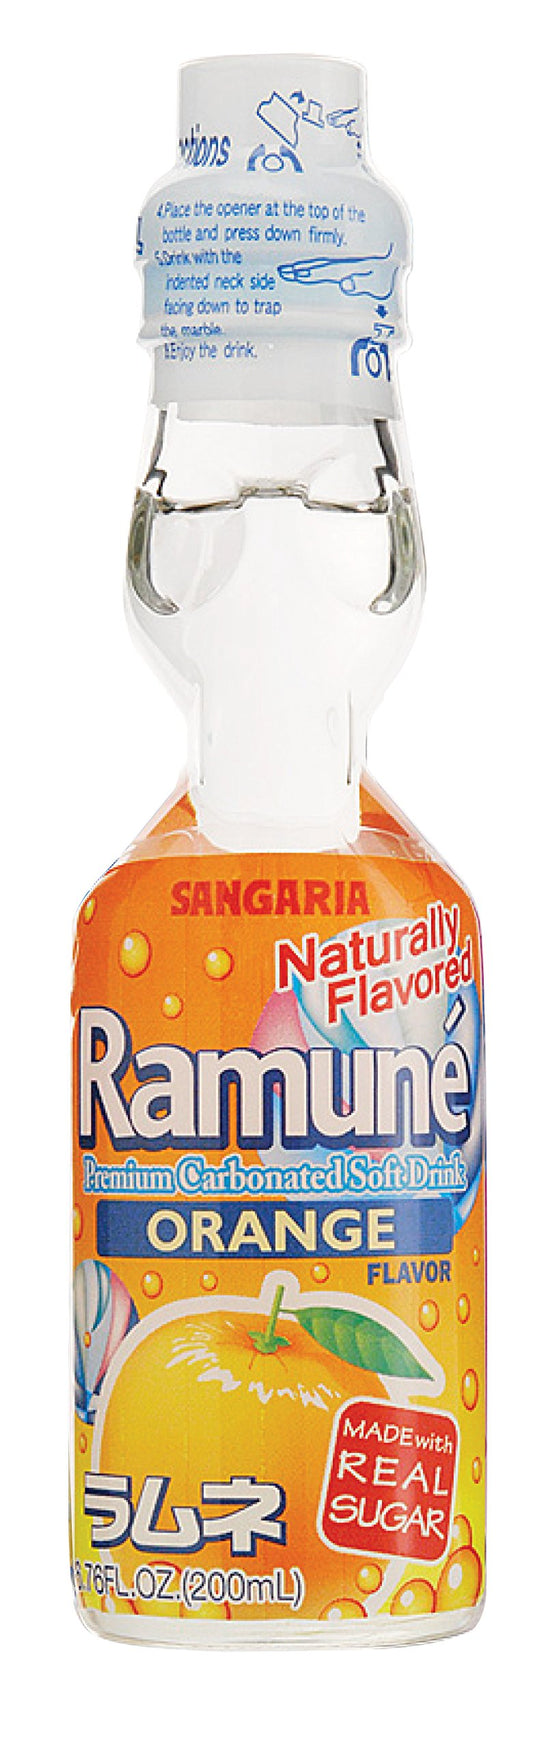 Ramune Orange Flavor (1 Bottle)